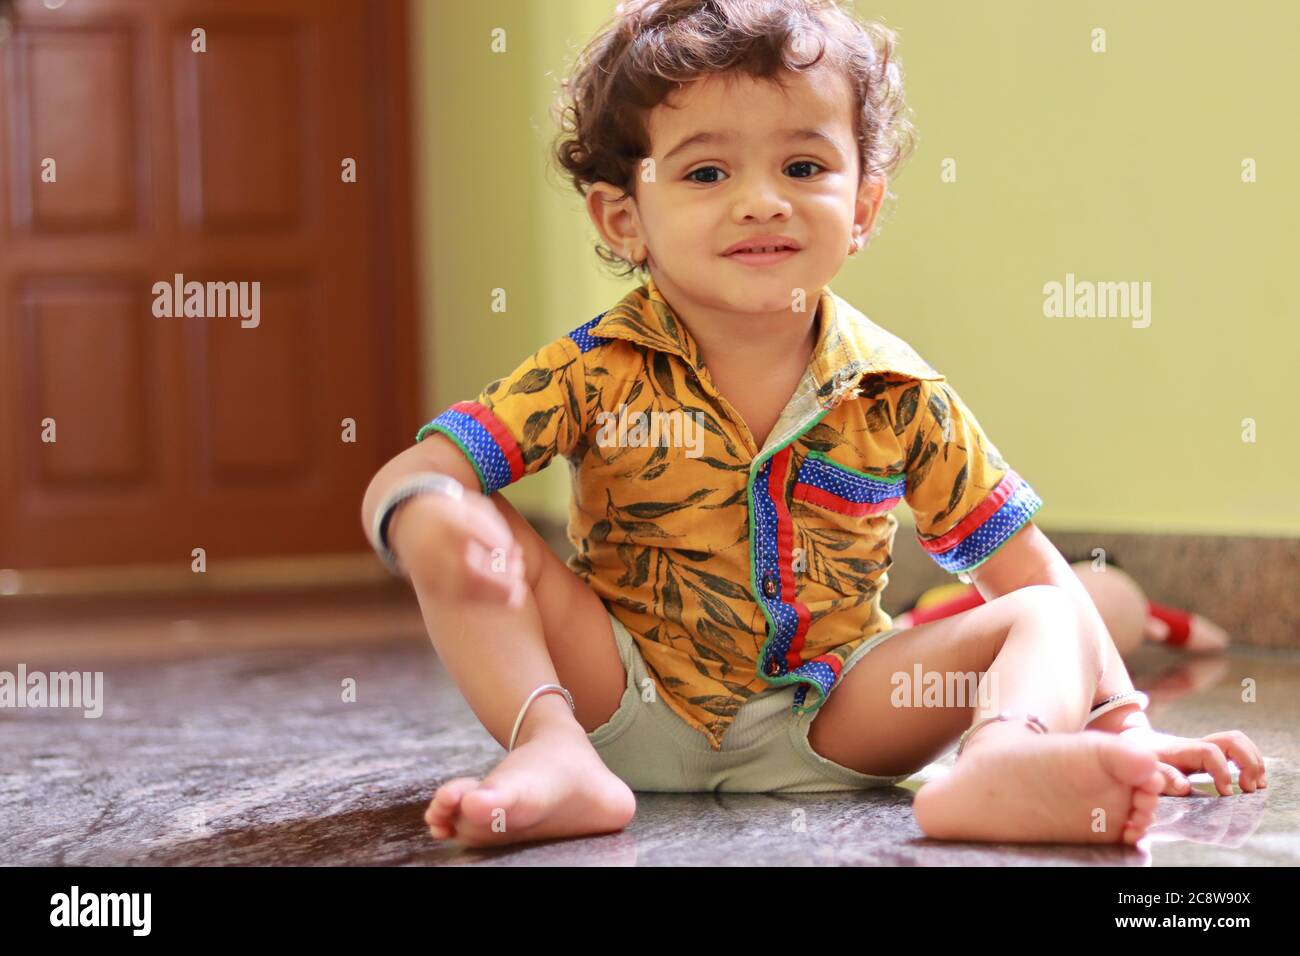 Drinnen Porträt eines kleinen Kindes (Kind) zu Hause Stockfoto